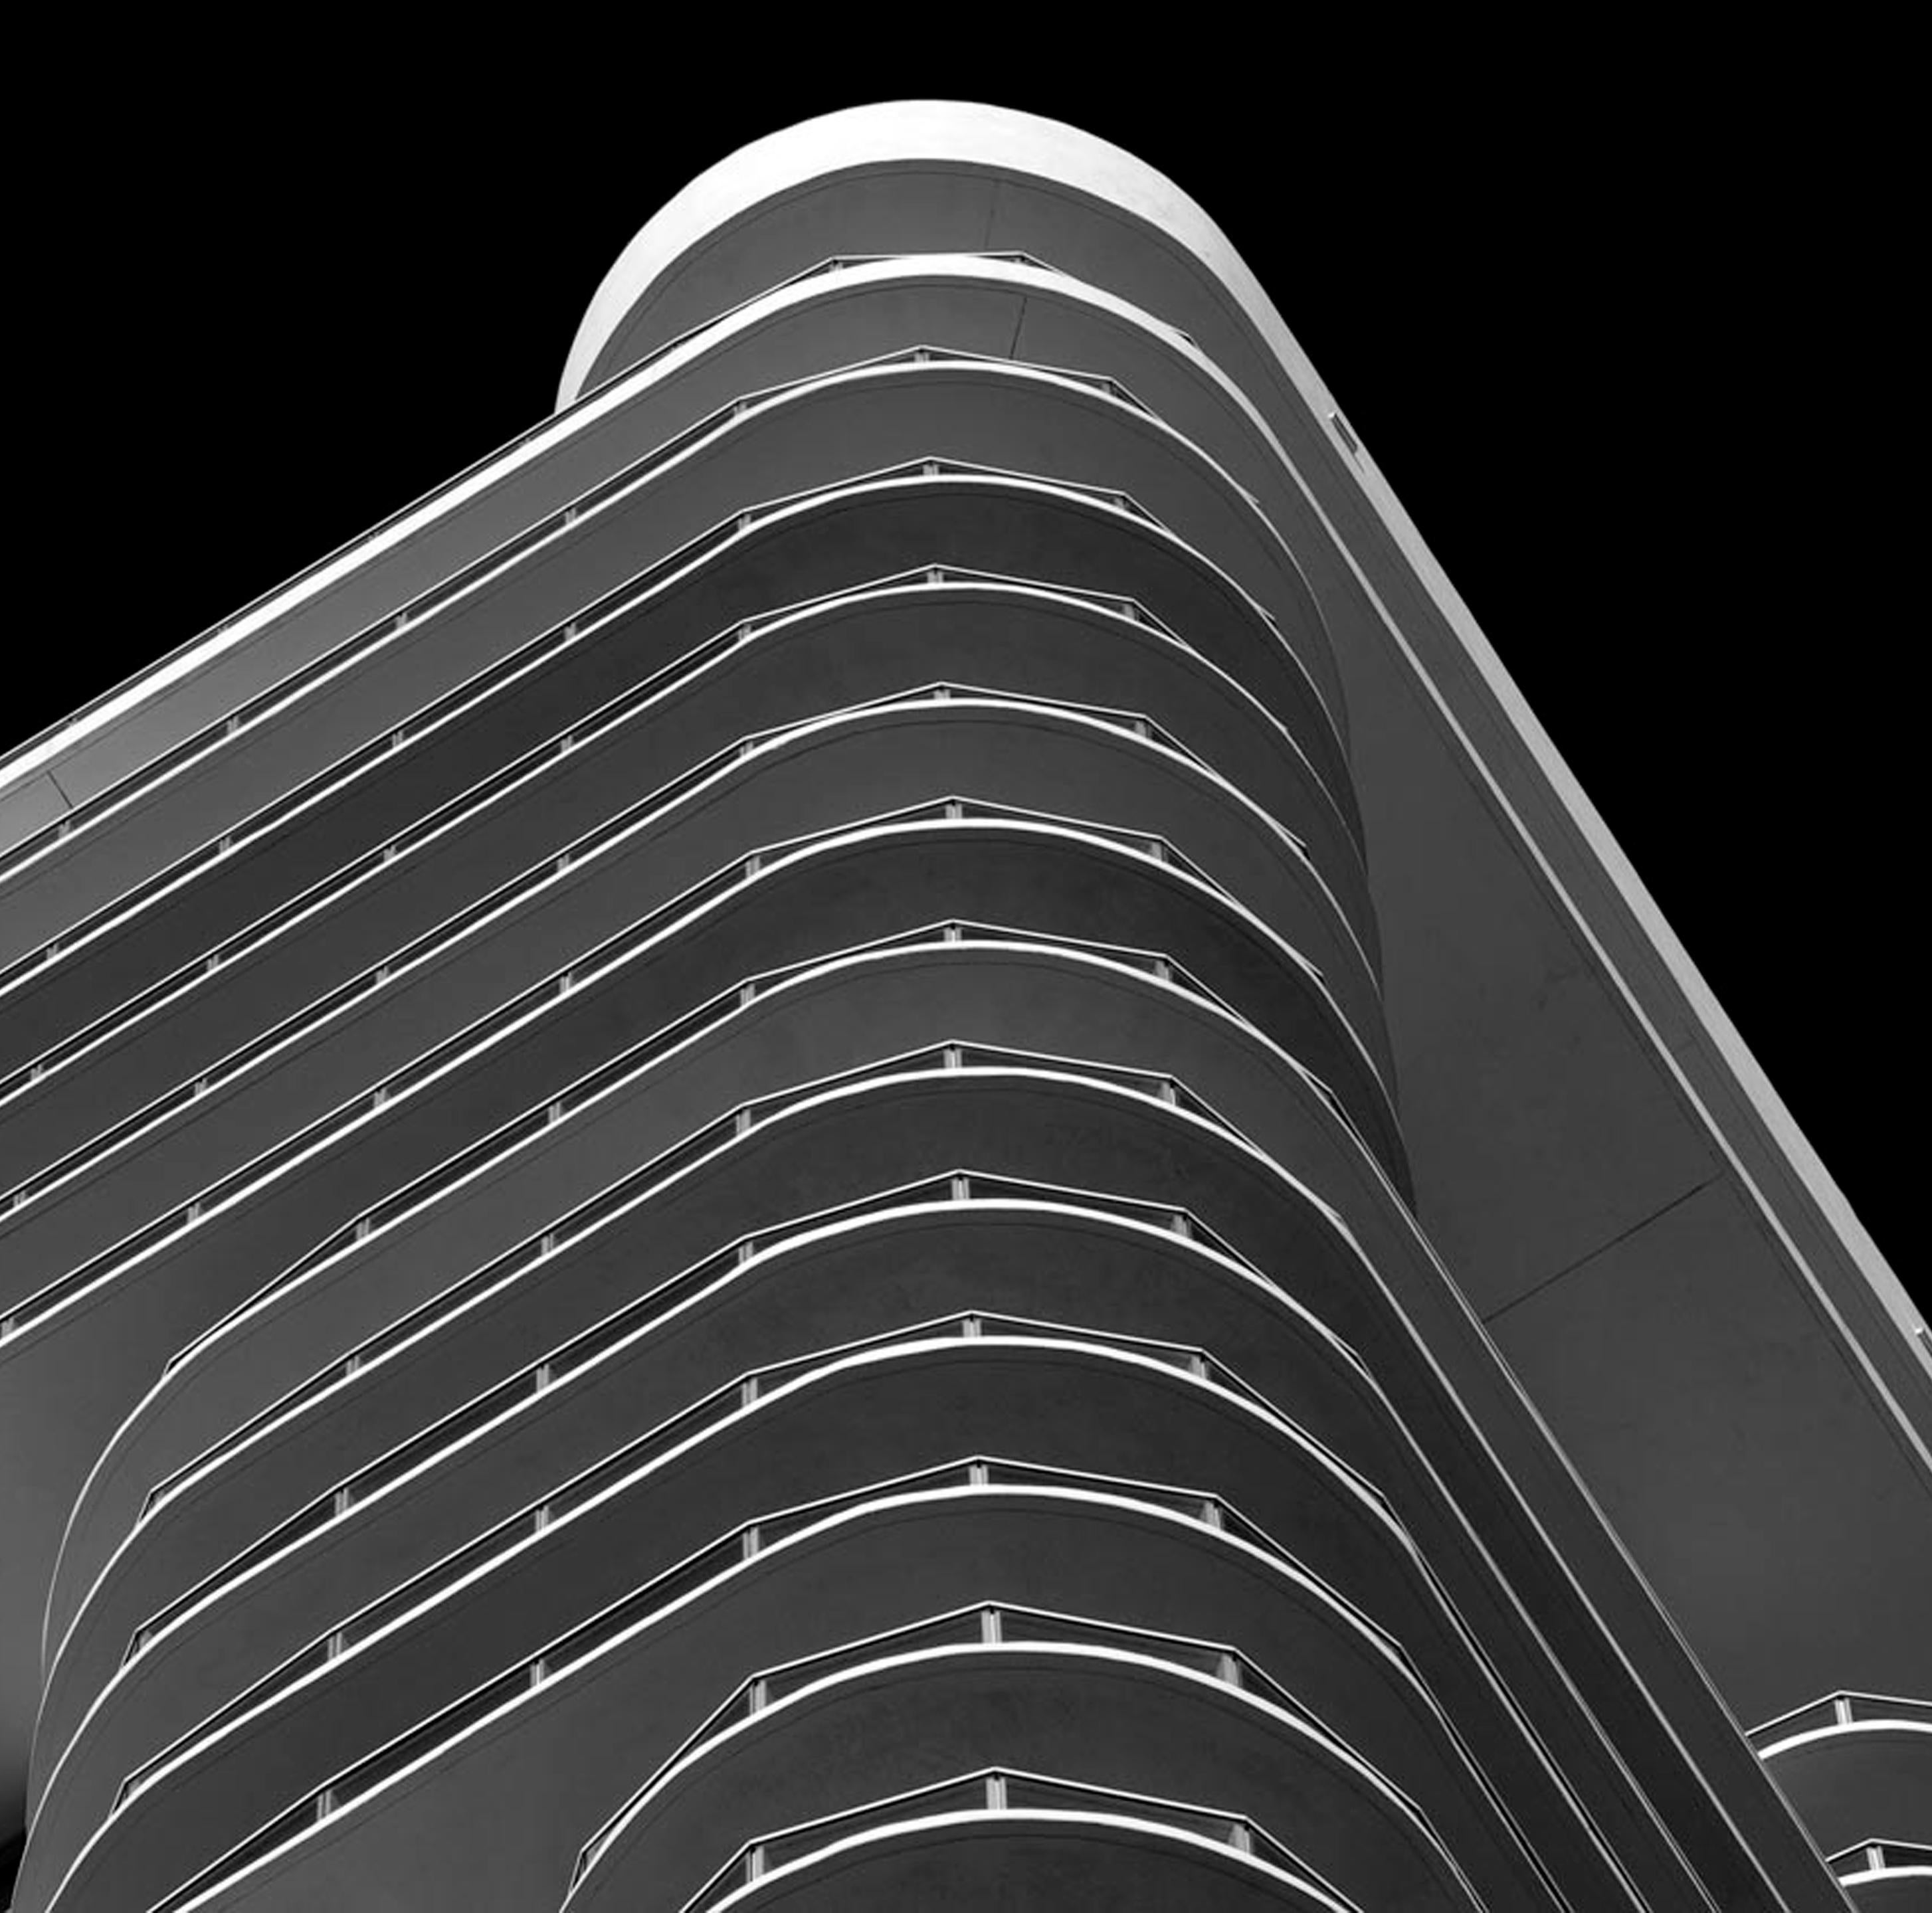 Miami Stripes, Black and White Architectural landscape Photograph